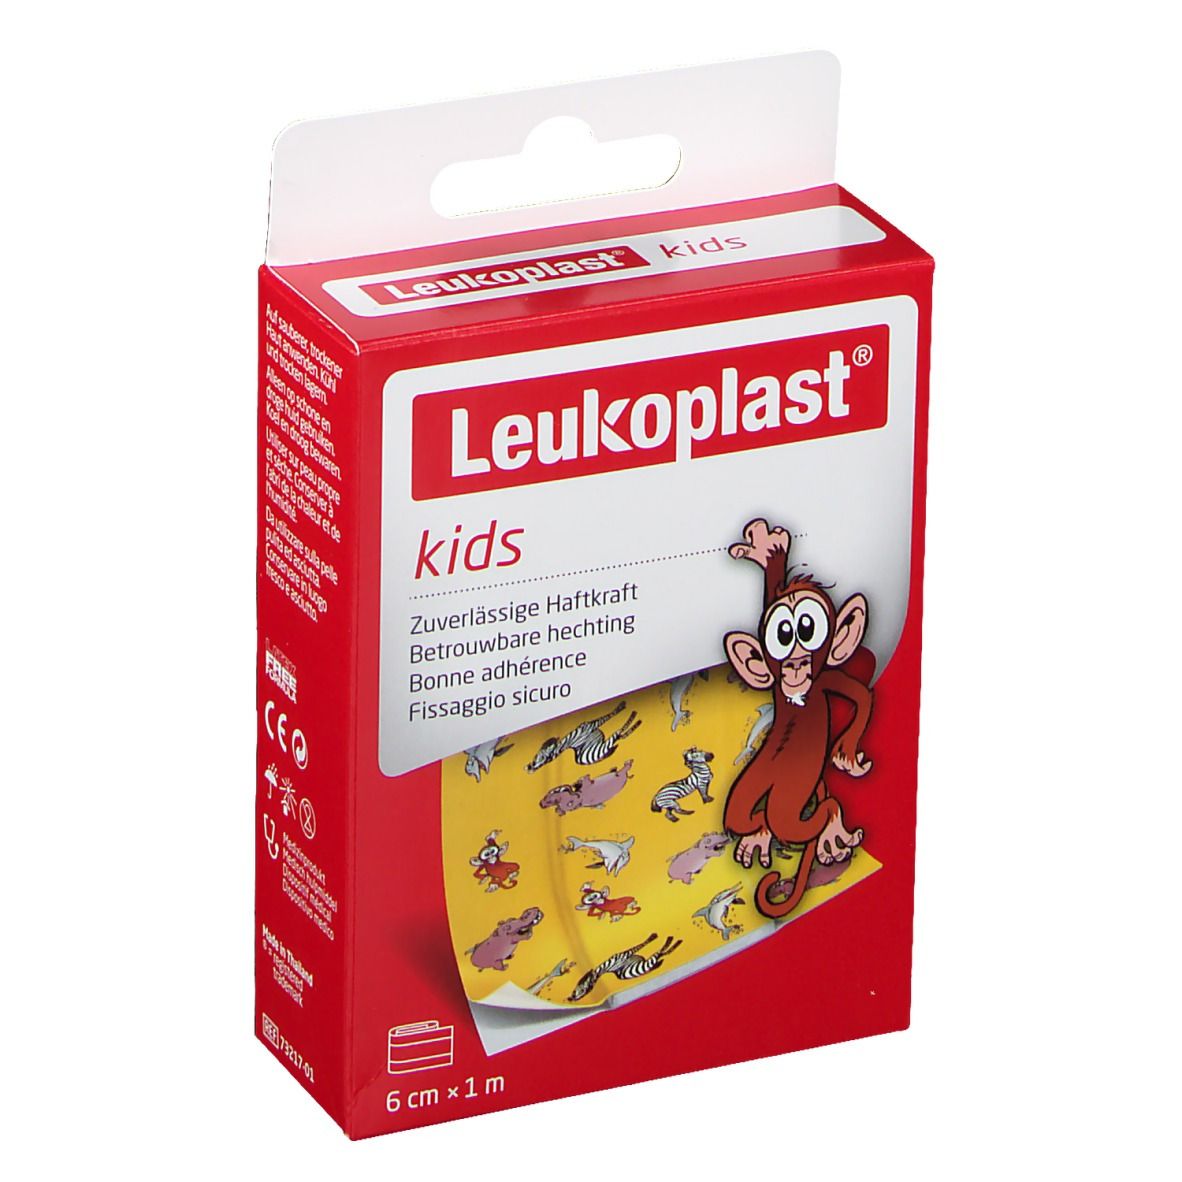 Leukoplast® Kids 6 cm x 1 m